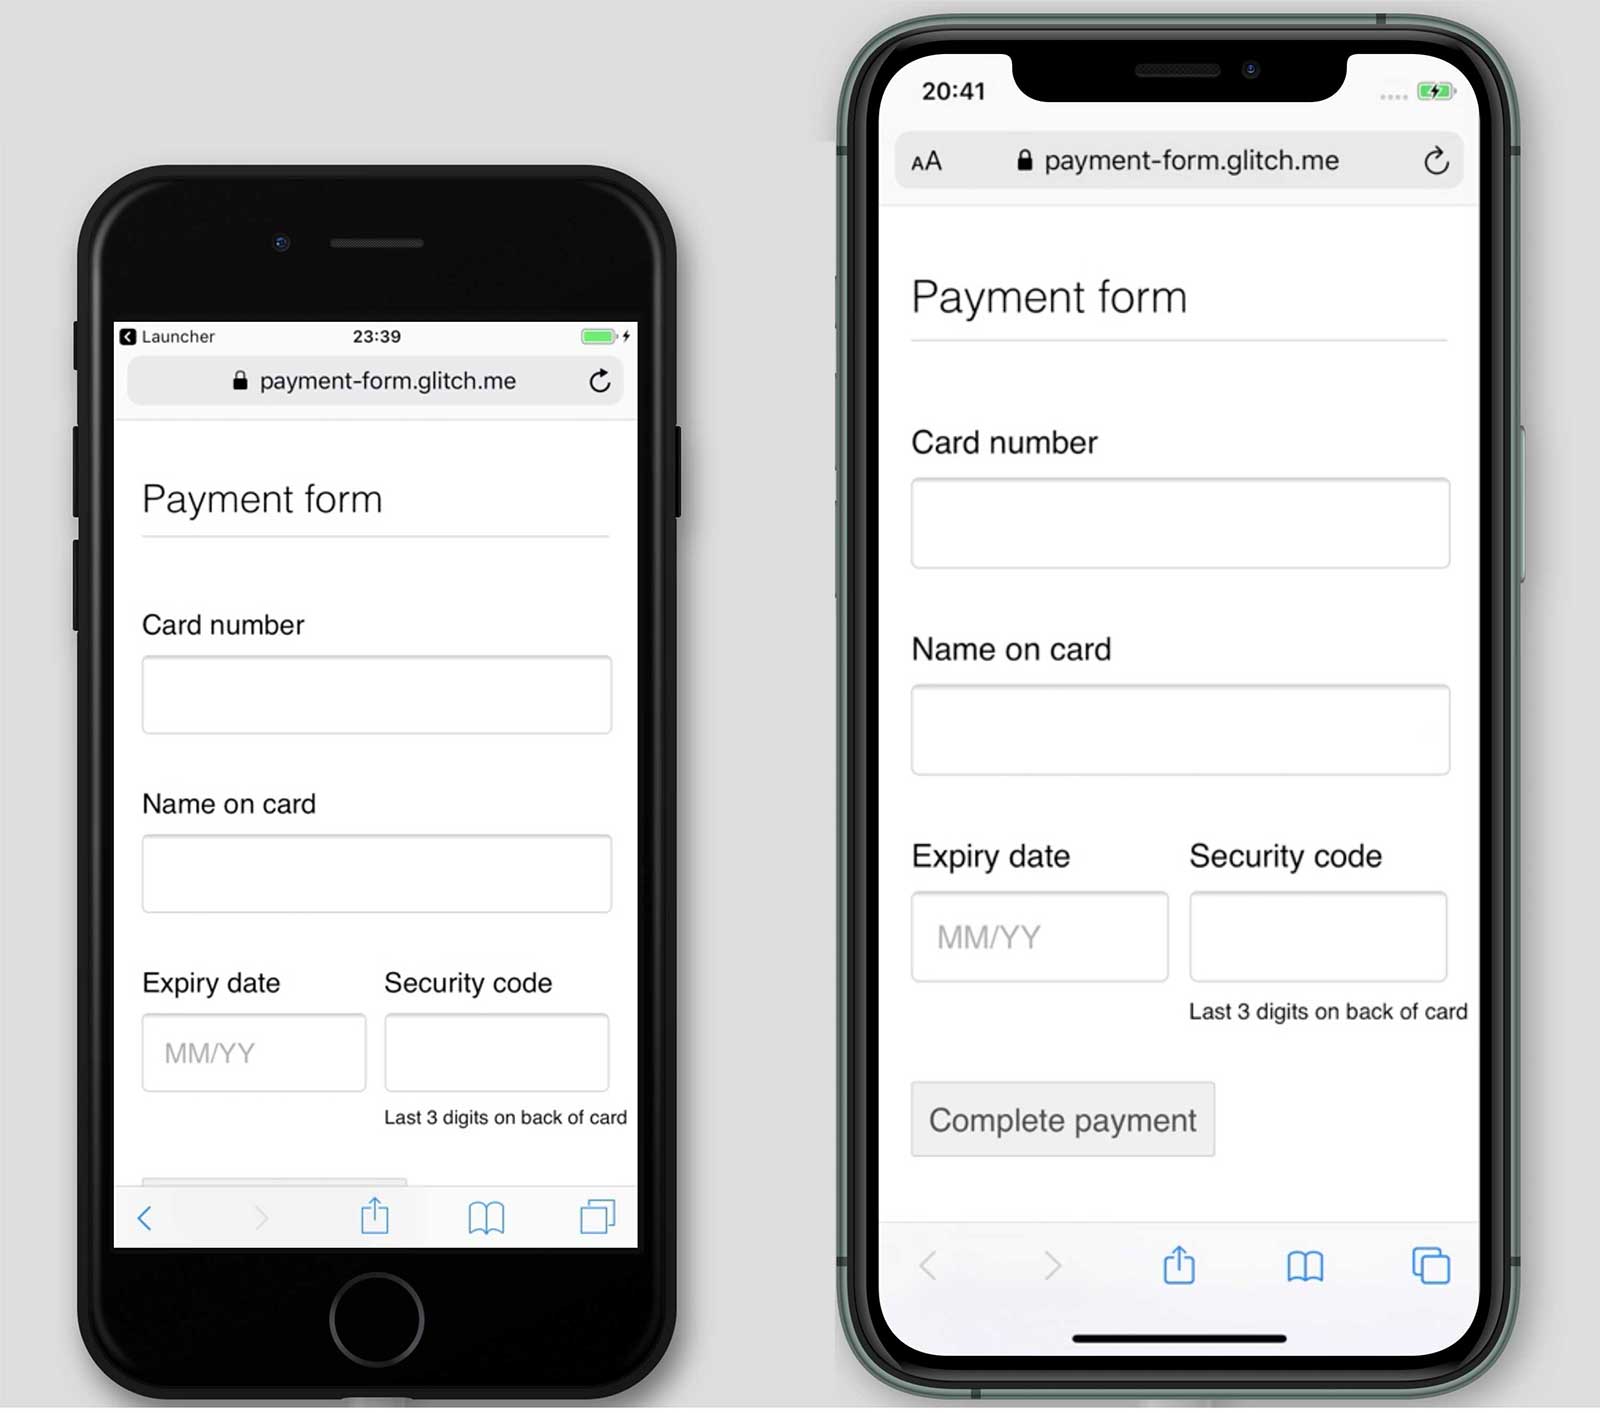 צילומי מסך של אמצעי תשלום, payment-form.glitch.me, ב-iPhone 7 ו-11. הלחצן &#39;לביצוע התשלום&#39; מוצג ב-iPhone 11 אבל לא ב-iPhone 7